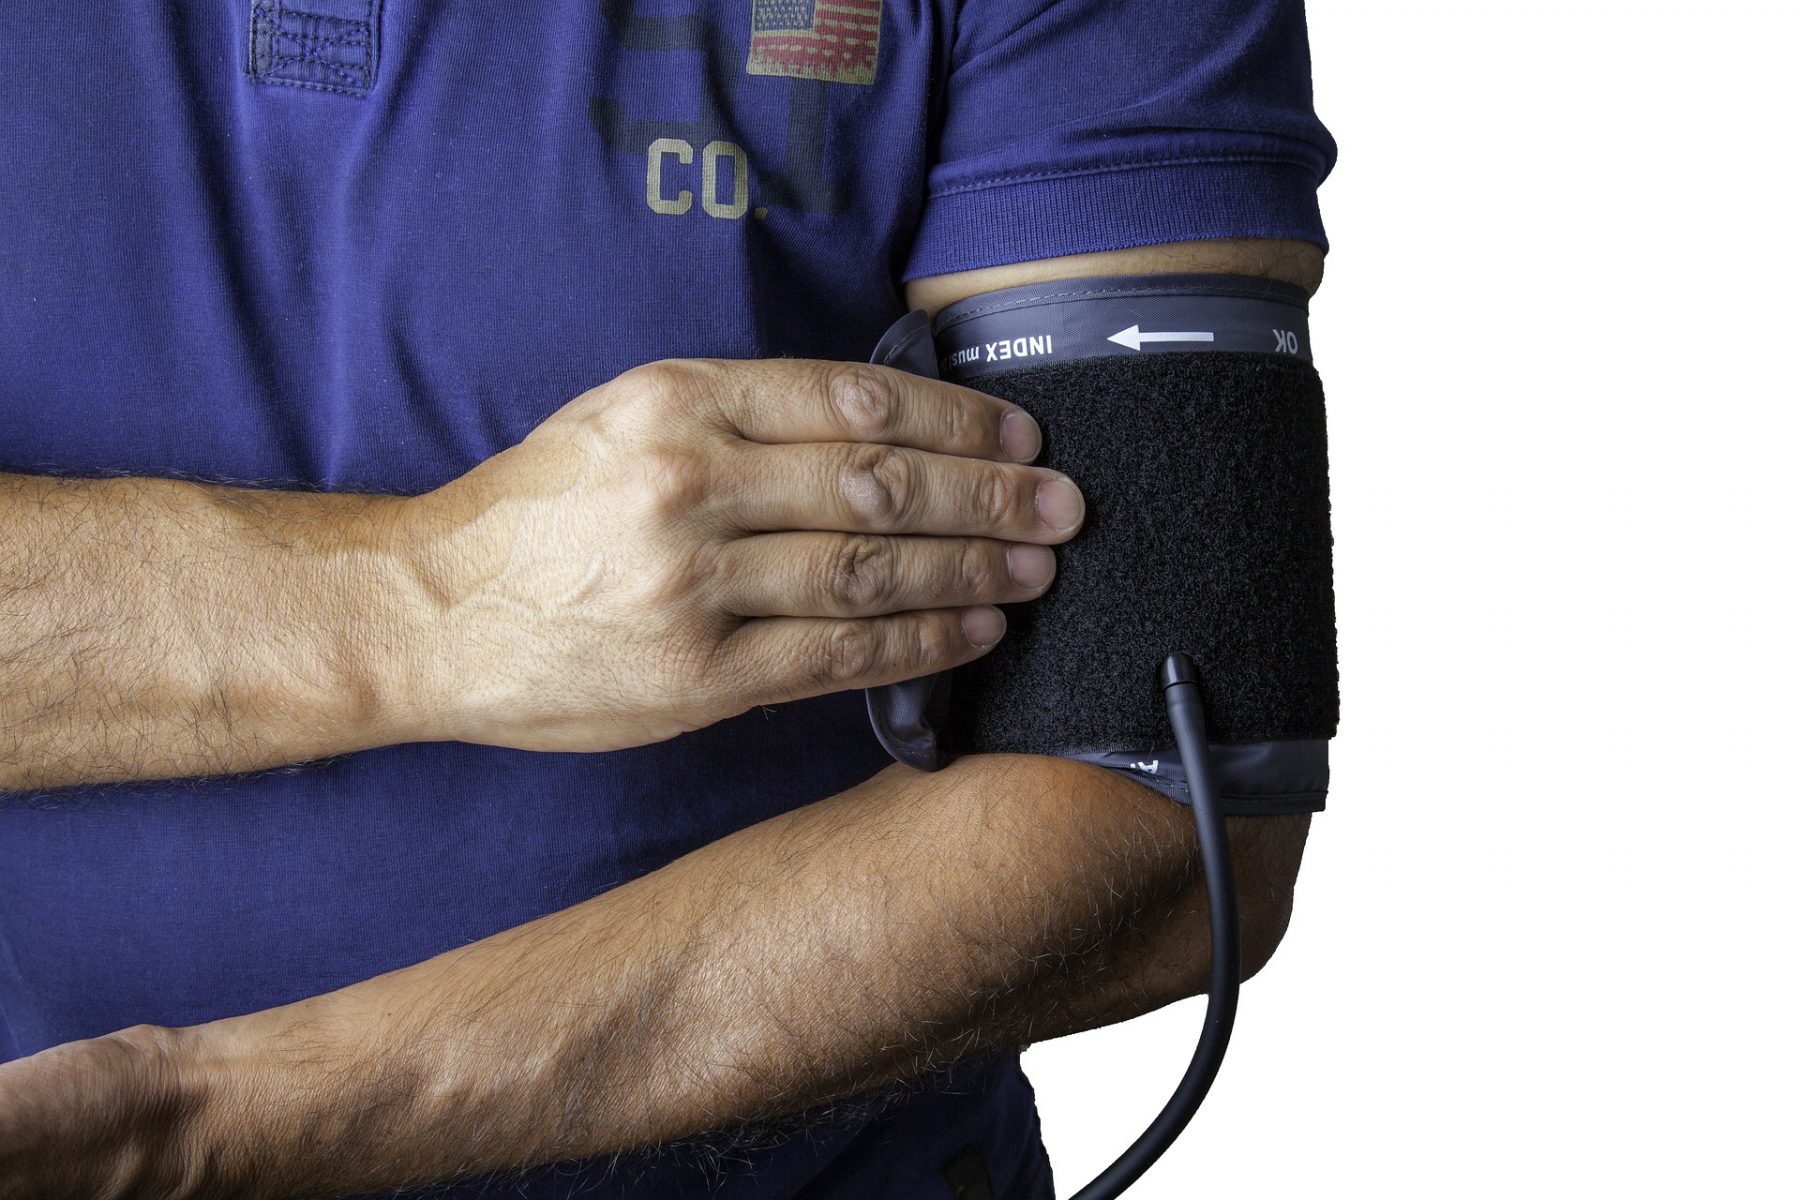 Αρτηριακή πίεση: Μειώστε τον κίνδυνο καρδιακής ανεπάρκειας με αλλαγές στον τρόπο ζωής